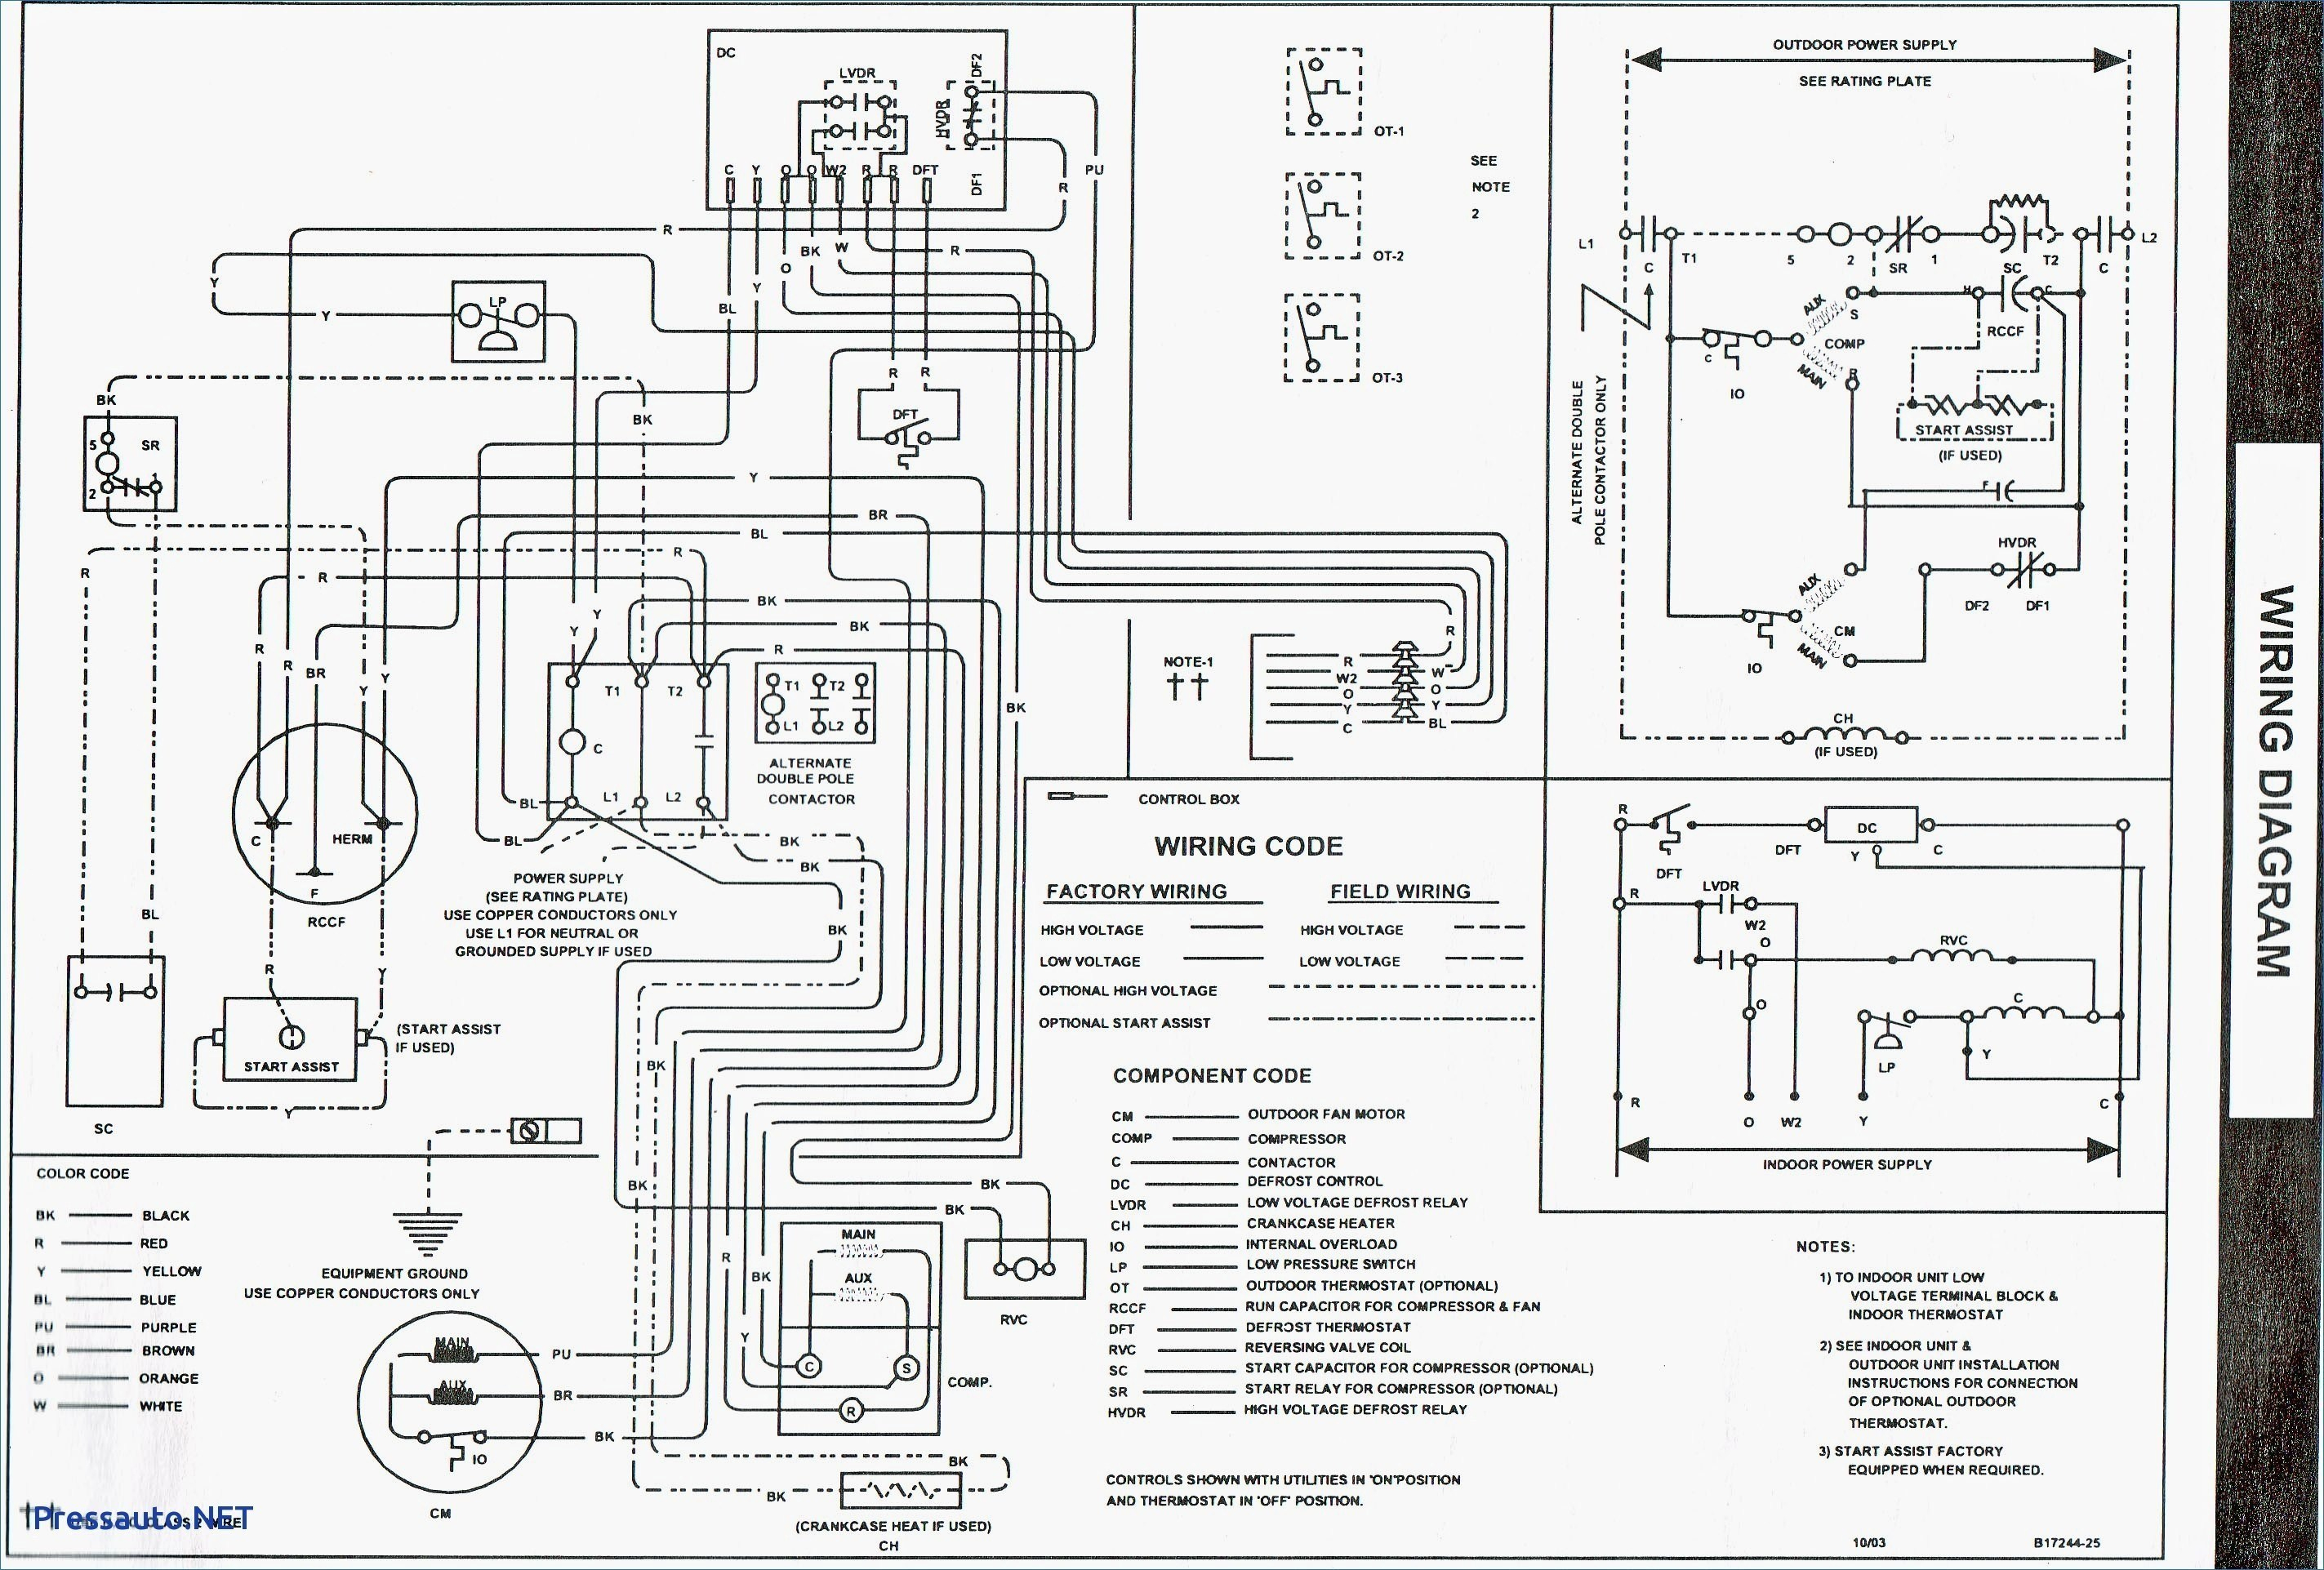 Ruud Oil Furnace Wiring Diagram | Wiring Diagram - Oil Furnace Wiring Diagram